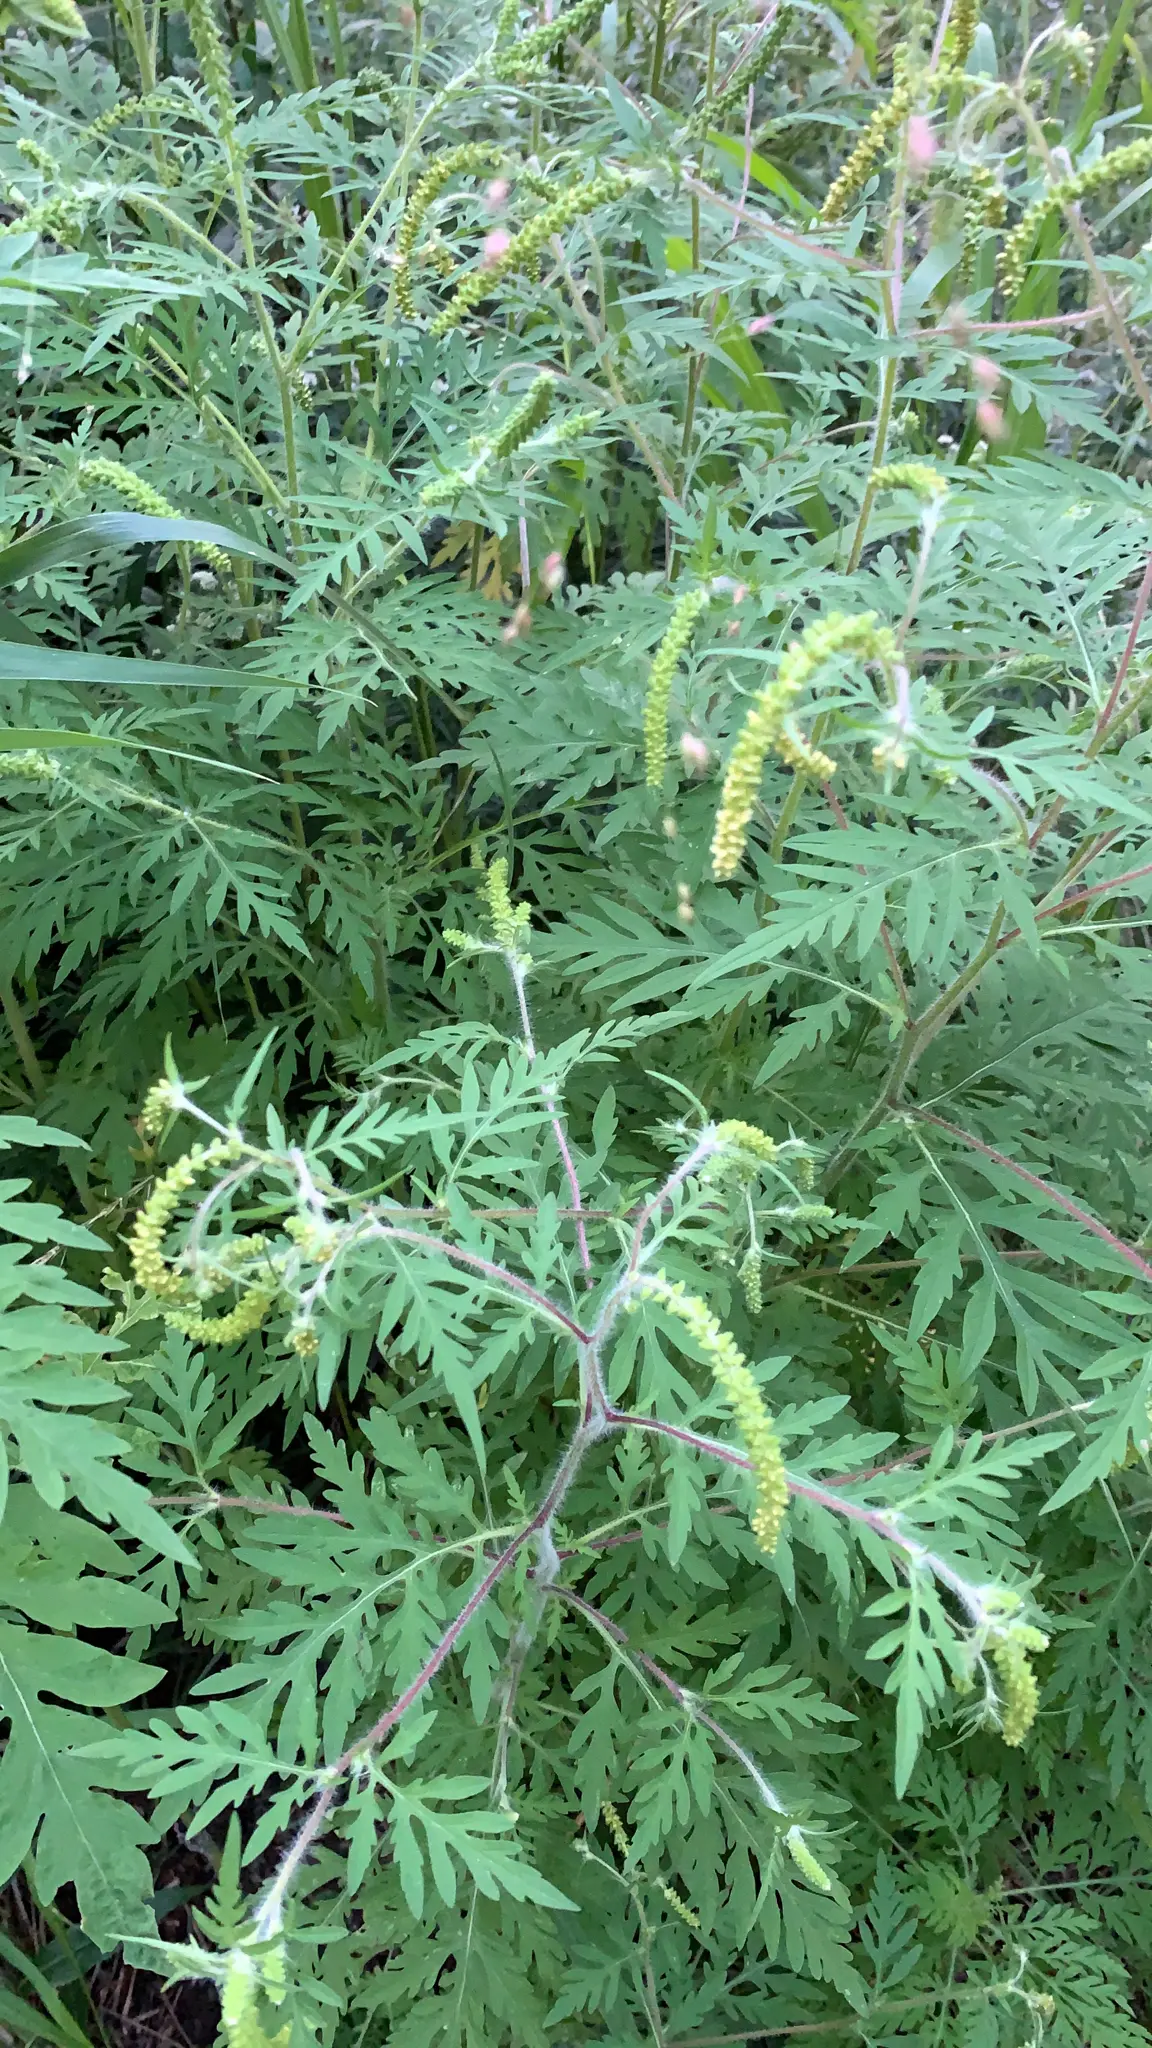 altamisa planta medicinal - Qué otro nombre tiene la altamisa